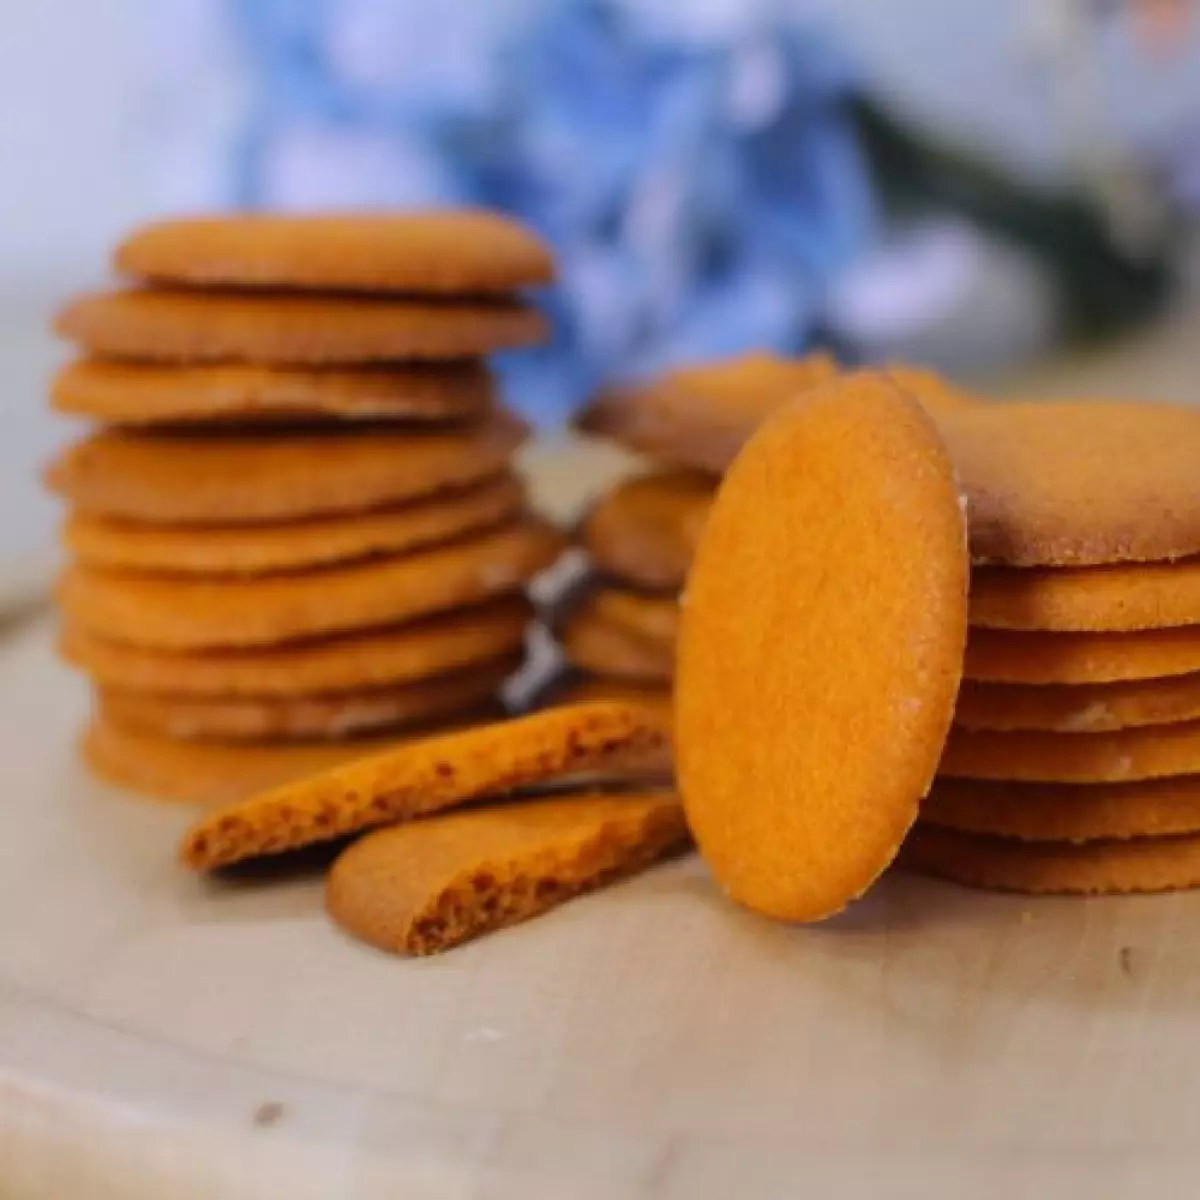 Bánh cookies phô mai là hương vị được nhiều người yêu thích.